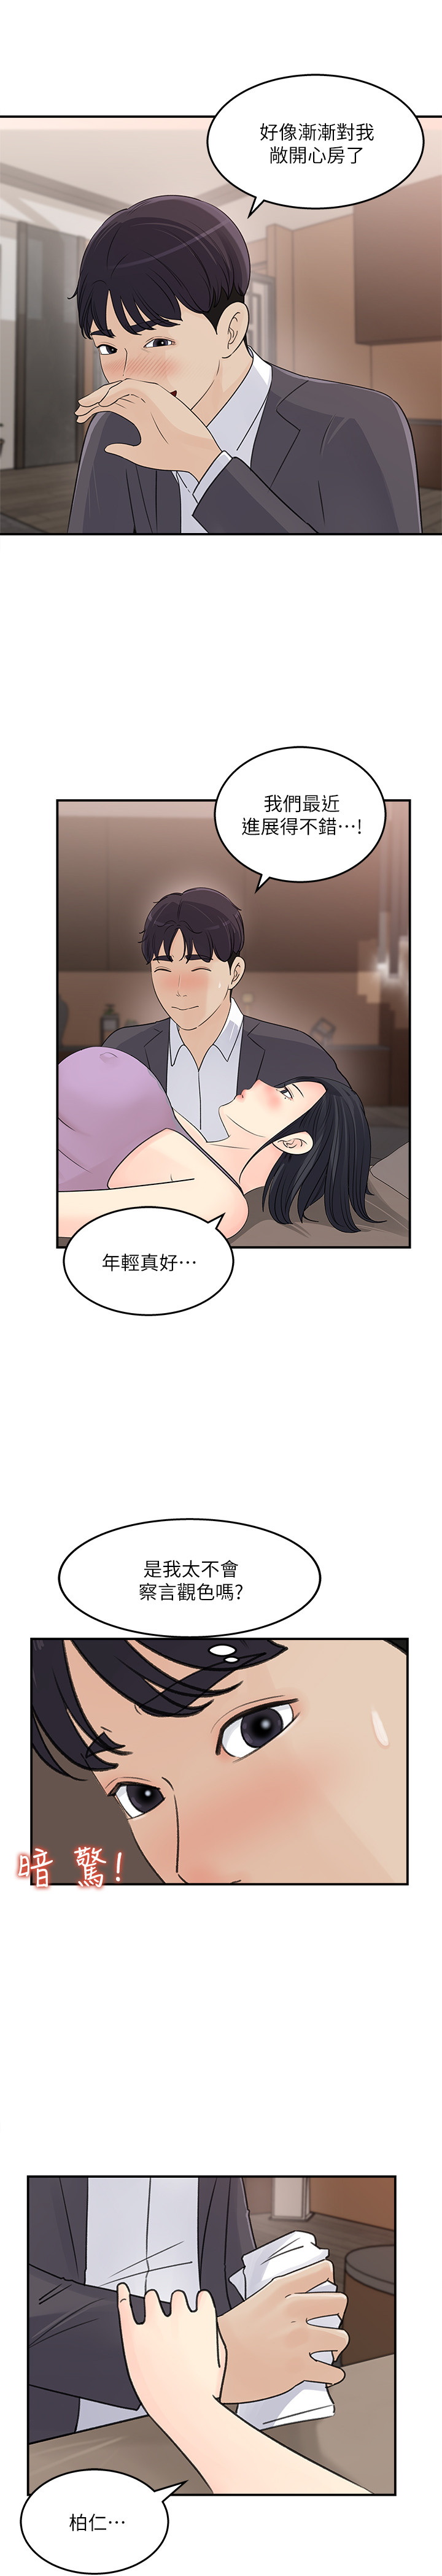 韩国污漫画 女神收藏清單 第26话 19